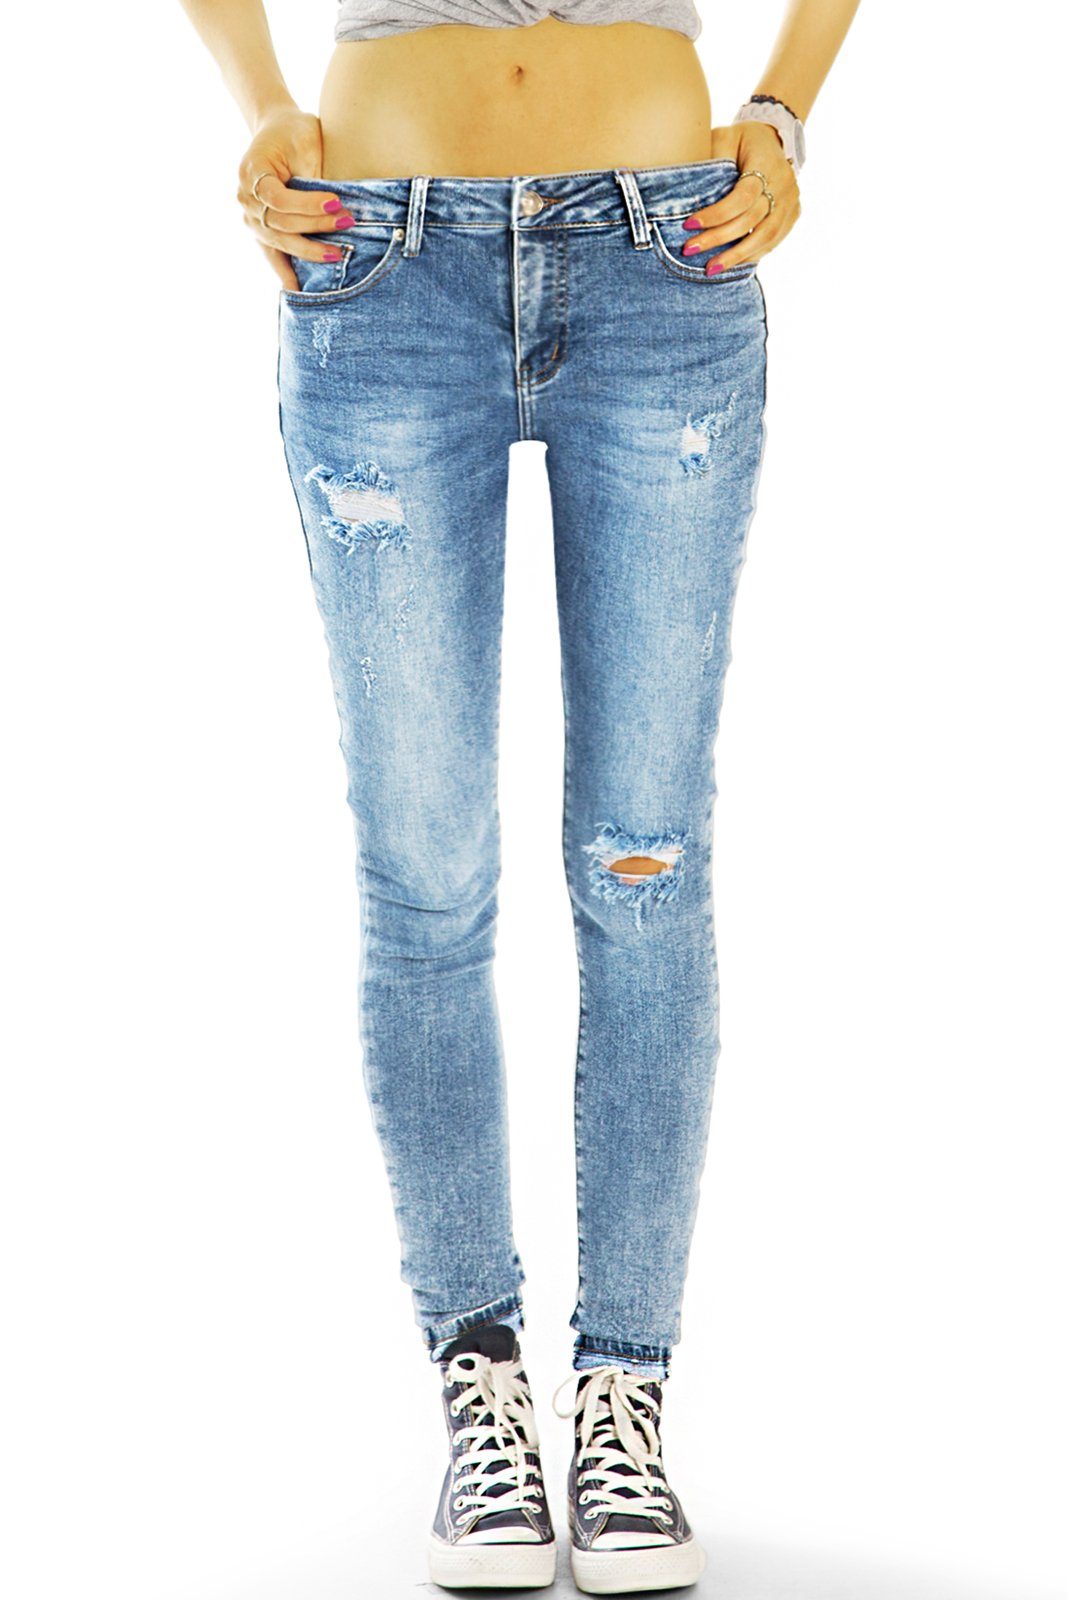 Hosen Medium - Skinnyhose Destroyed-Jeans destroyed Look - mit Röhrige used 5-Pocket-Style Damen waist Jeans j26i styled Stretch-Anteil, be